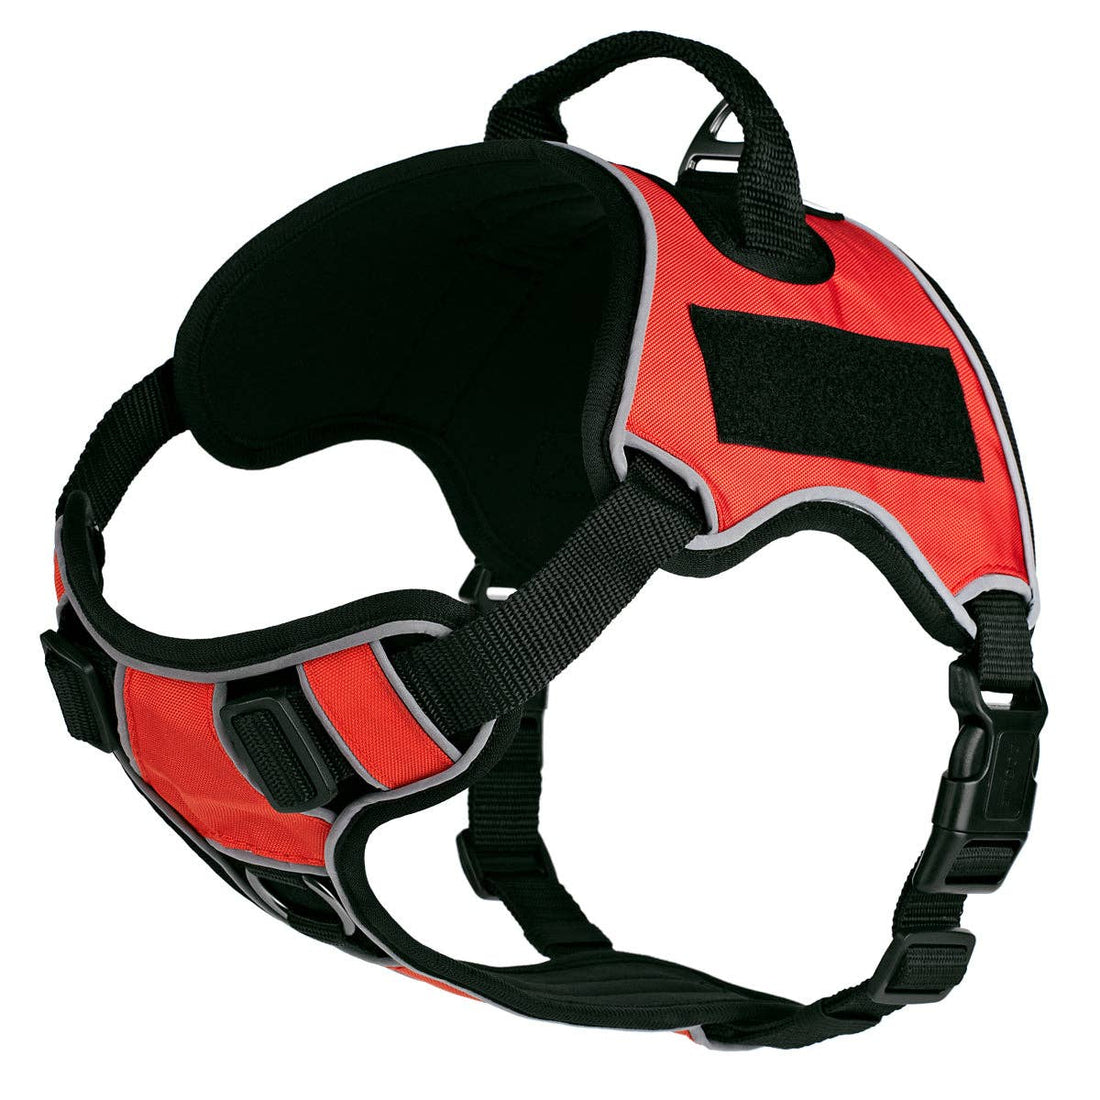 Dogline Quest Multi-Purpose Dog Harness, Red, 15-18”